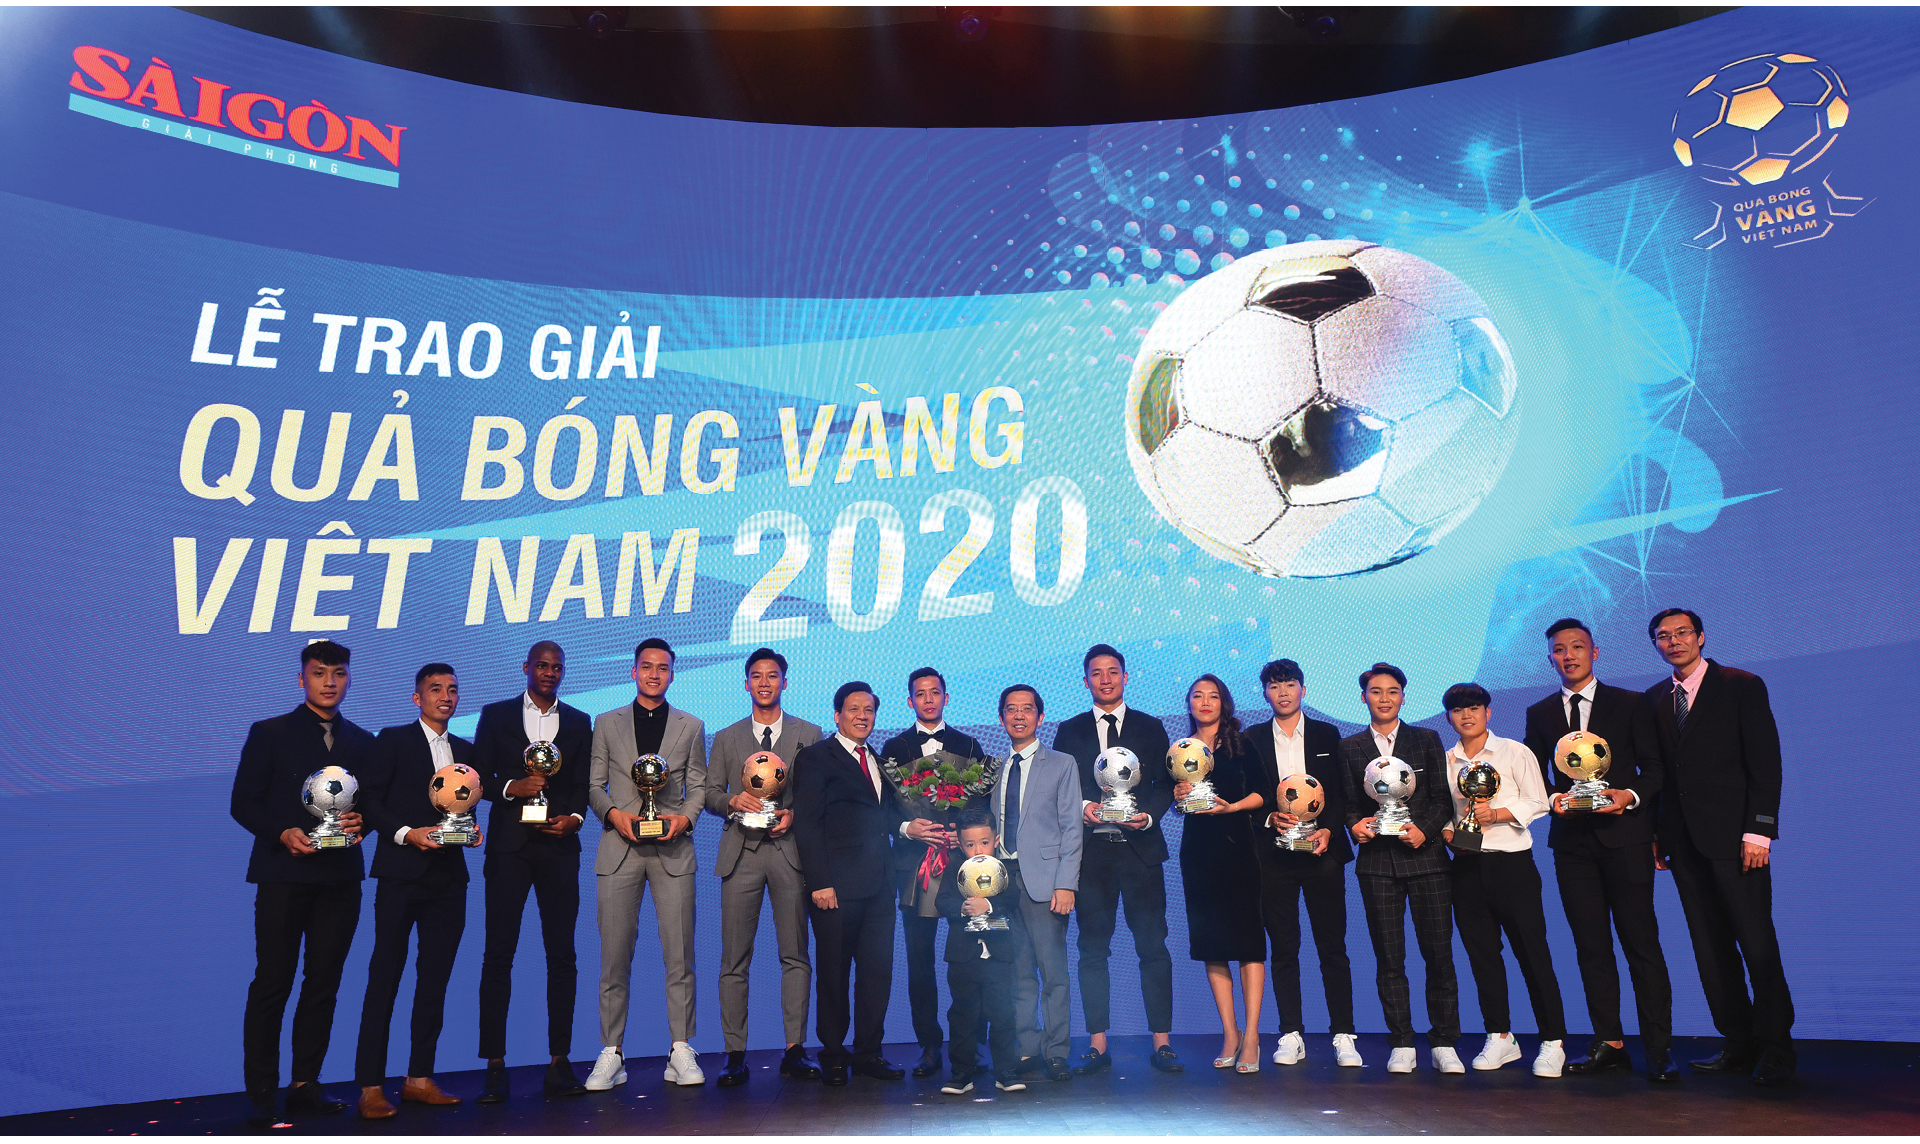 Quả bóng vàng Việt Nam 2020 - Thương hiệu và cảm xúc ảnh 3